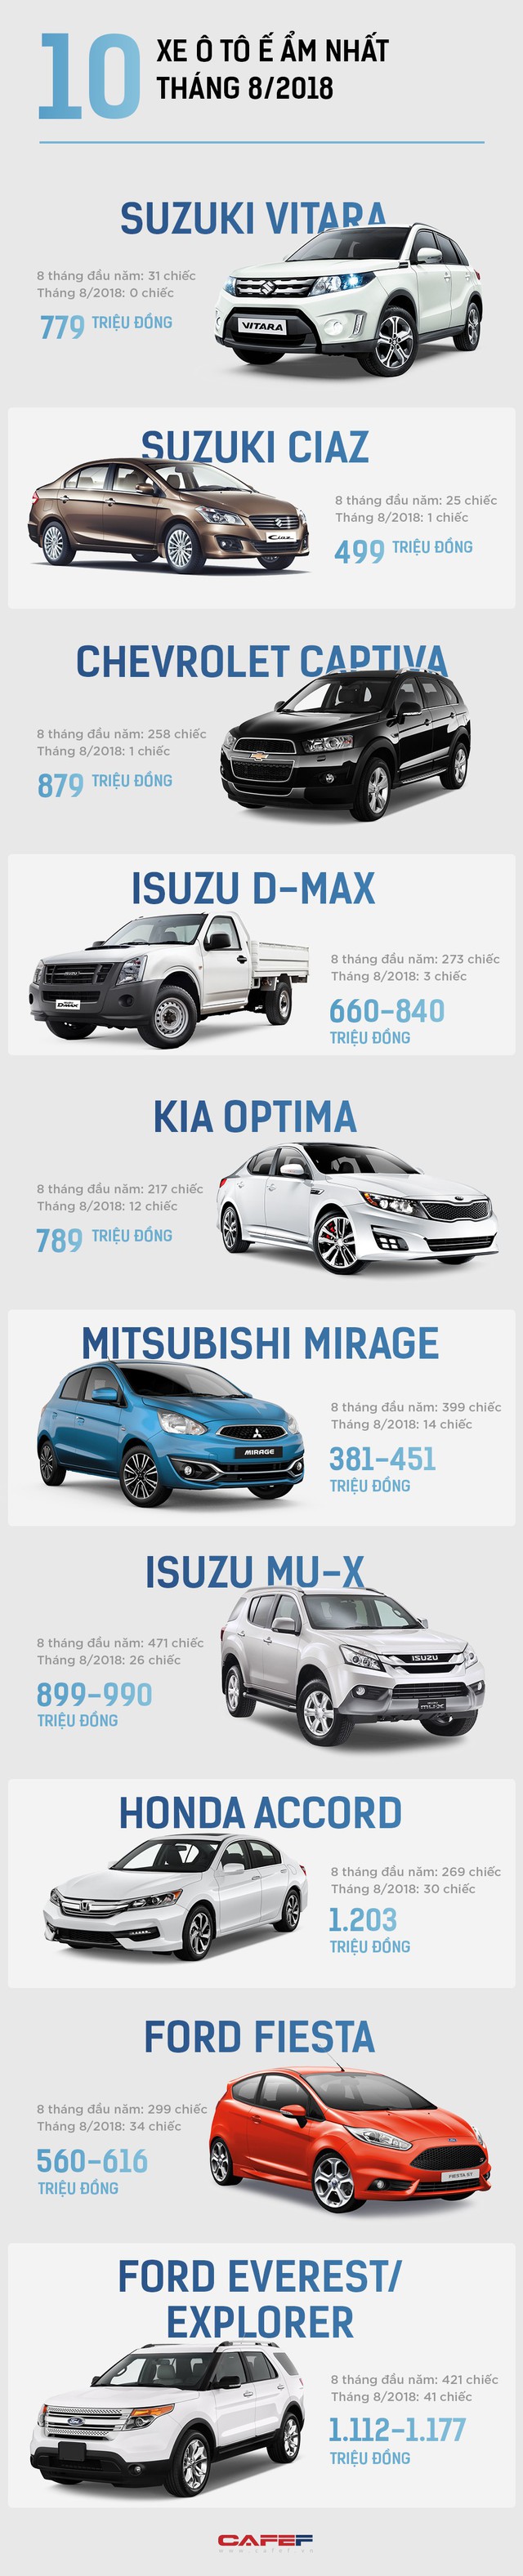 10 mẫu xe ô tô ế ẩm nhất tháng 8/2018: Suzuki Vitara không bán được chiếc nào - Ảnh 1.